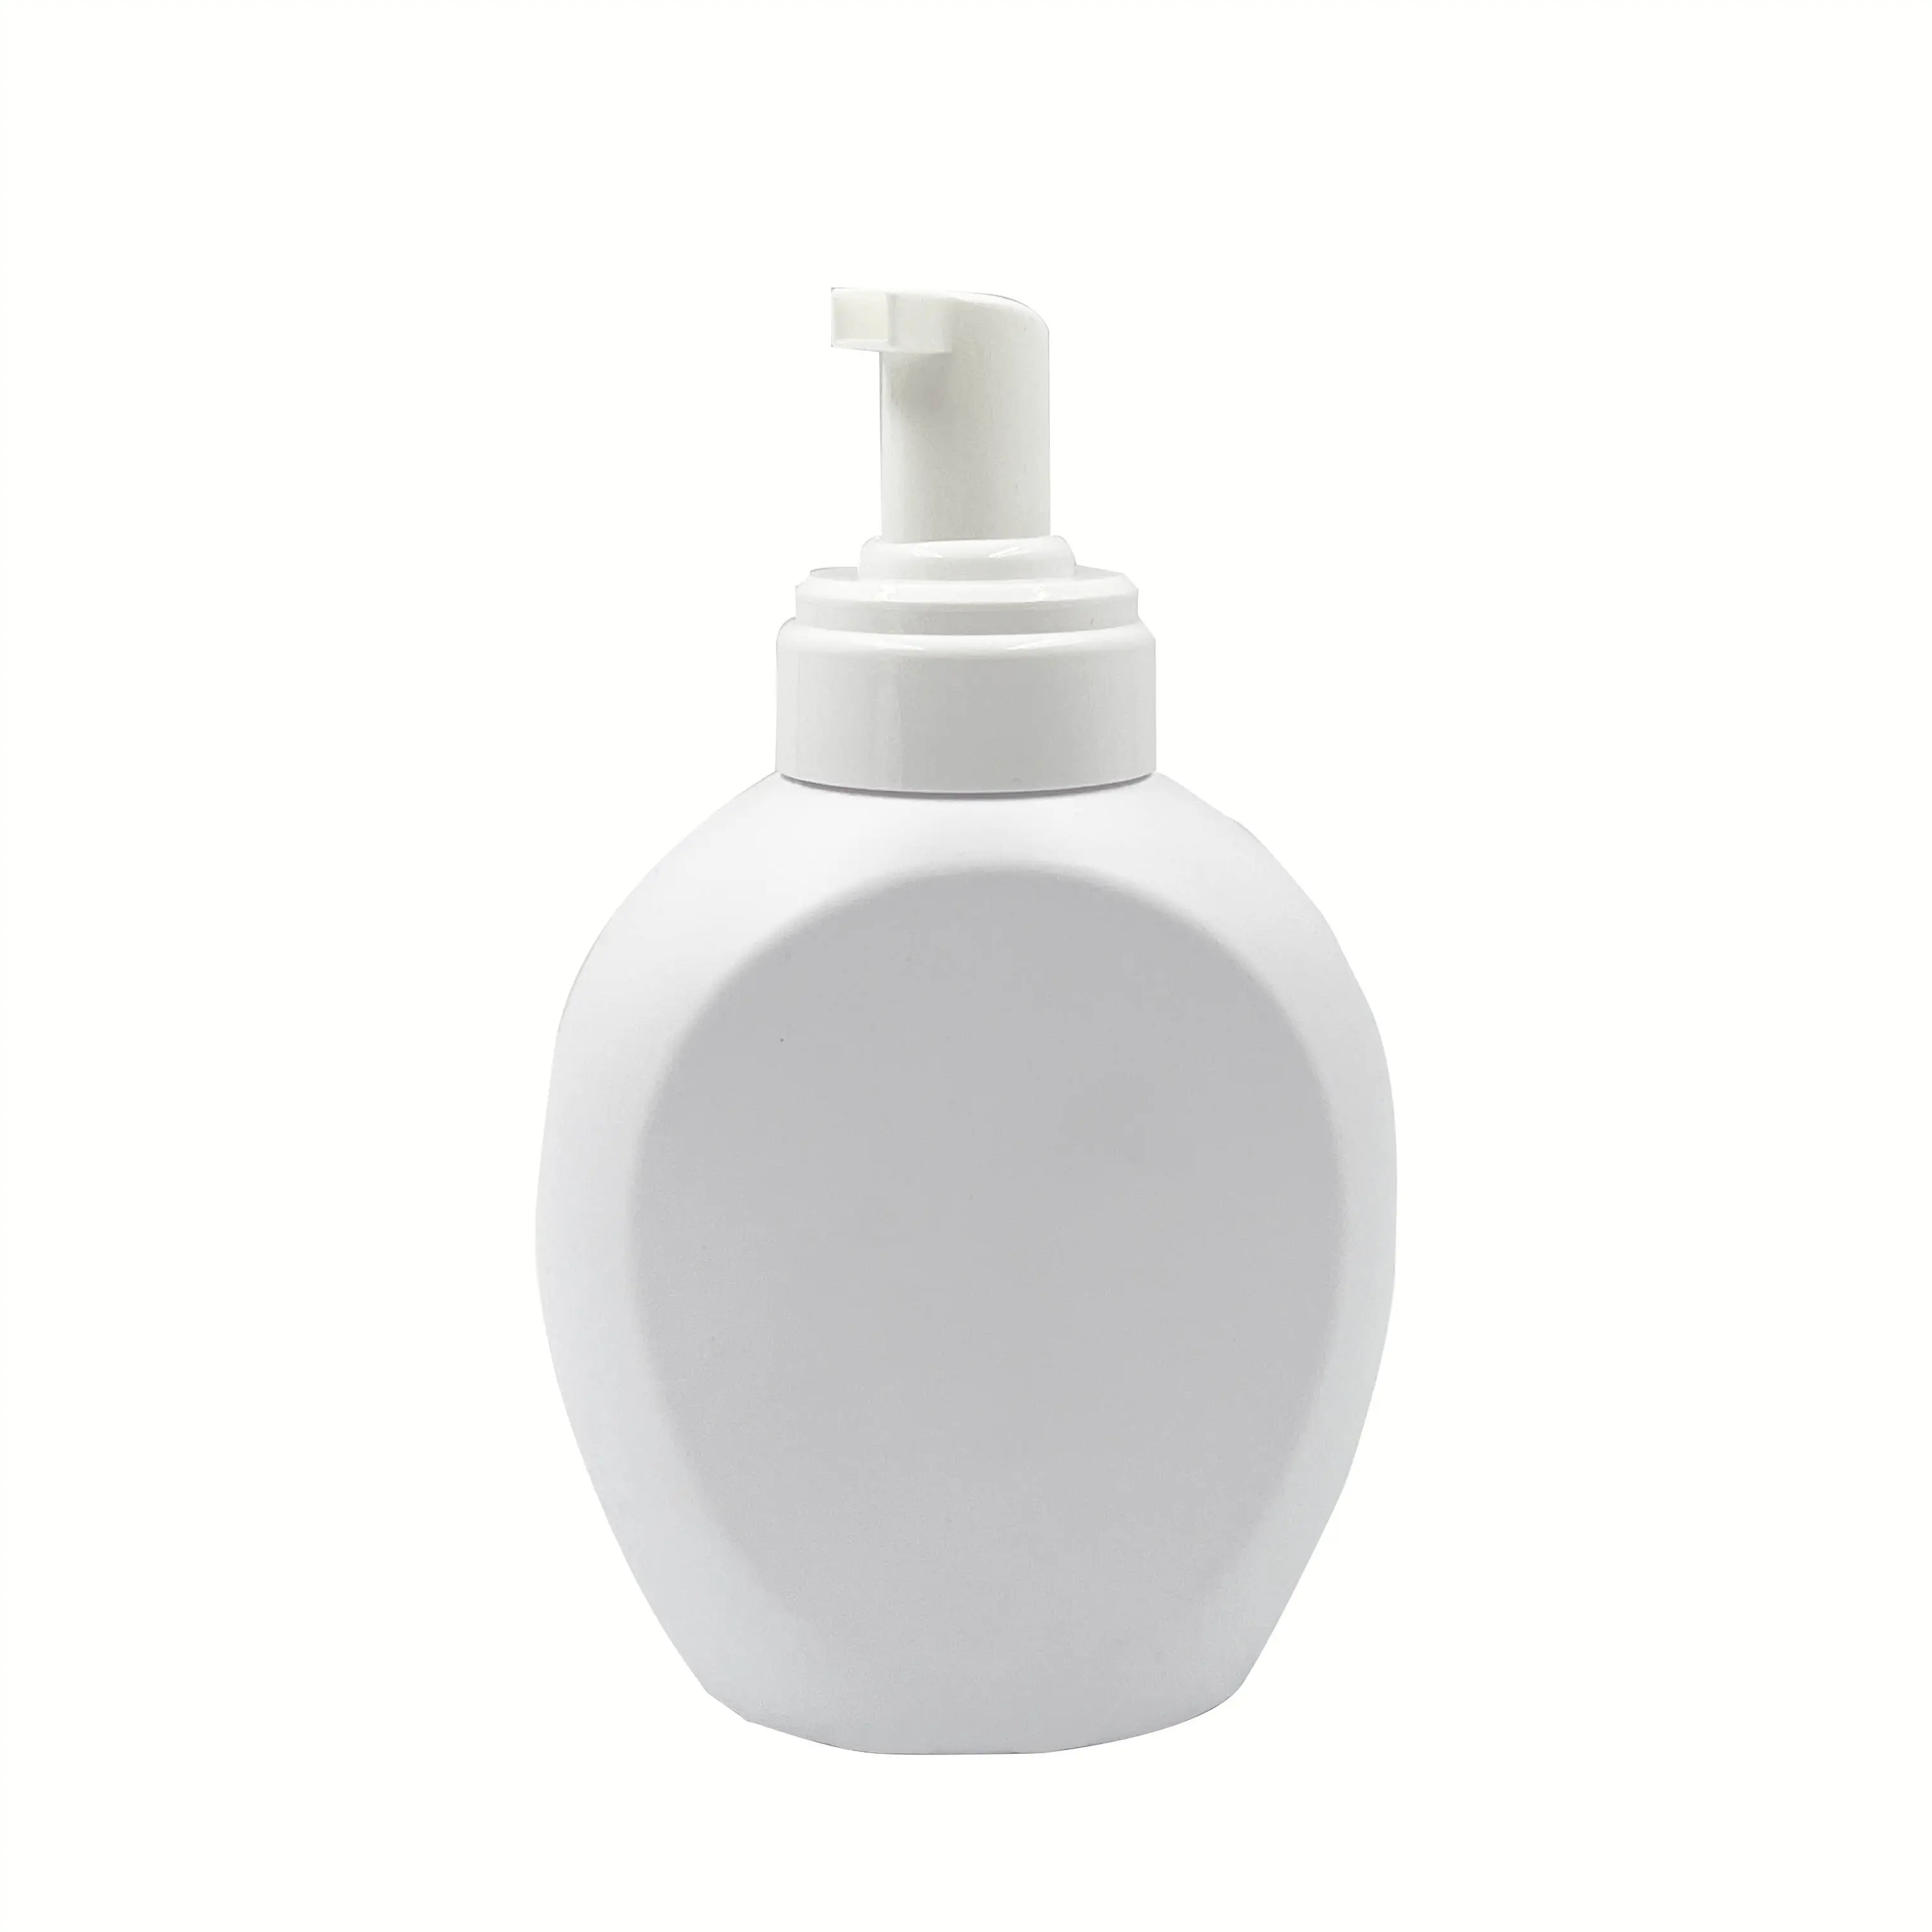 OEM 560ml riutilizzabile in plastica bianca per il viso detergente cosmetico per bottiglie di sapone per il viso con pompa per uso liquido